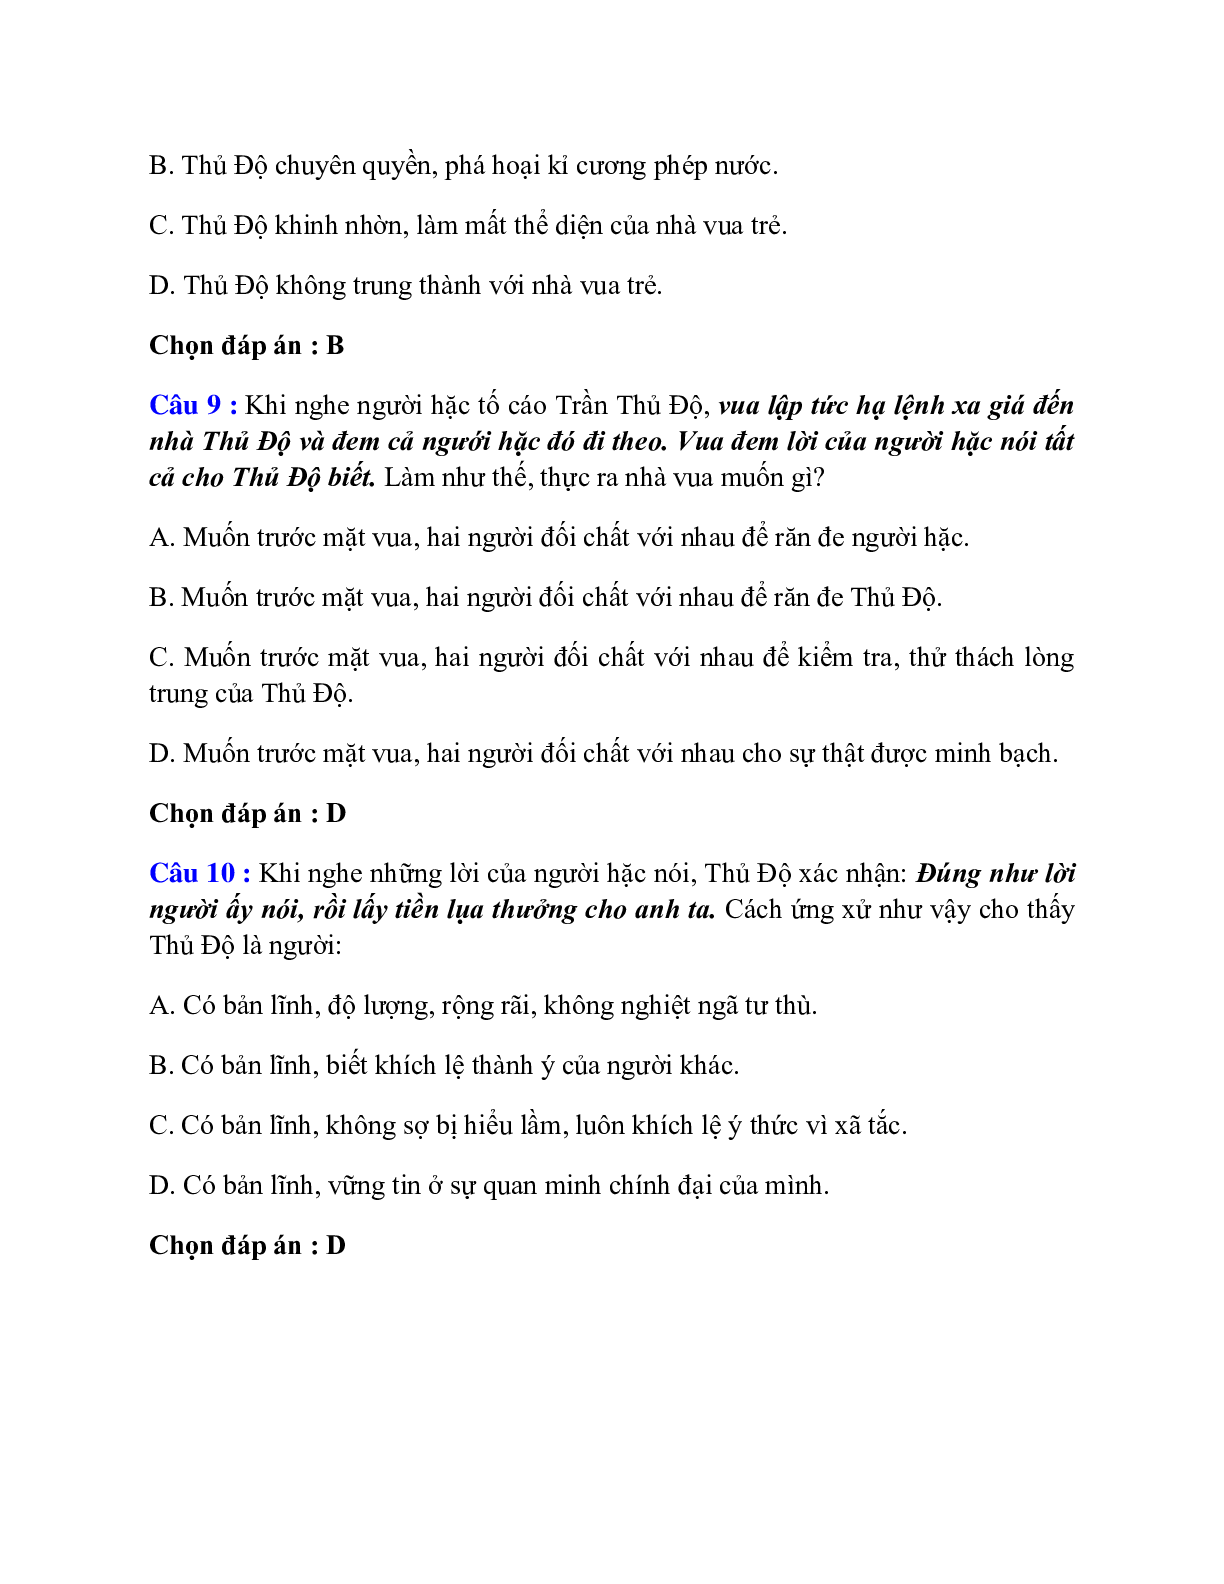 Trắc nghiệm Thái sư Trần Thủ Độ (Ngô Sĩ Liên) có đáp án – Ngữ văn lớp 10 (trang 4)